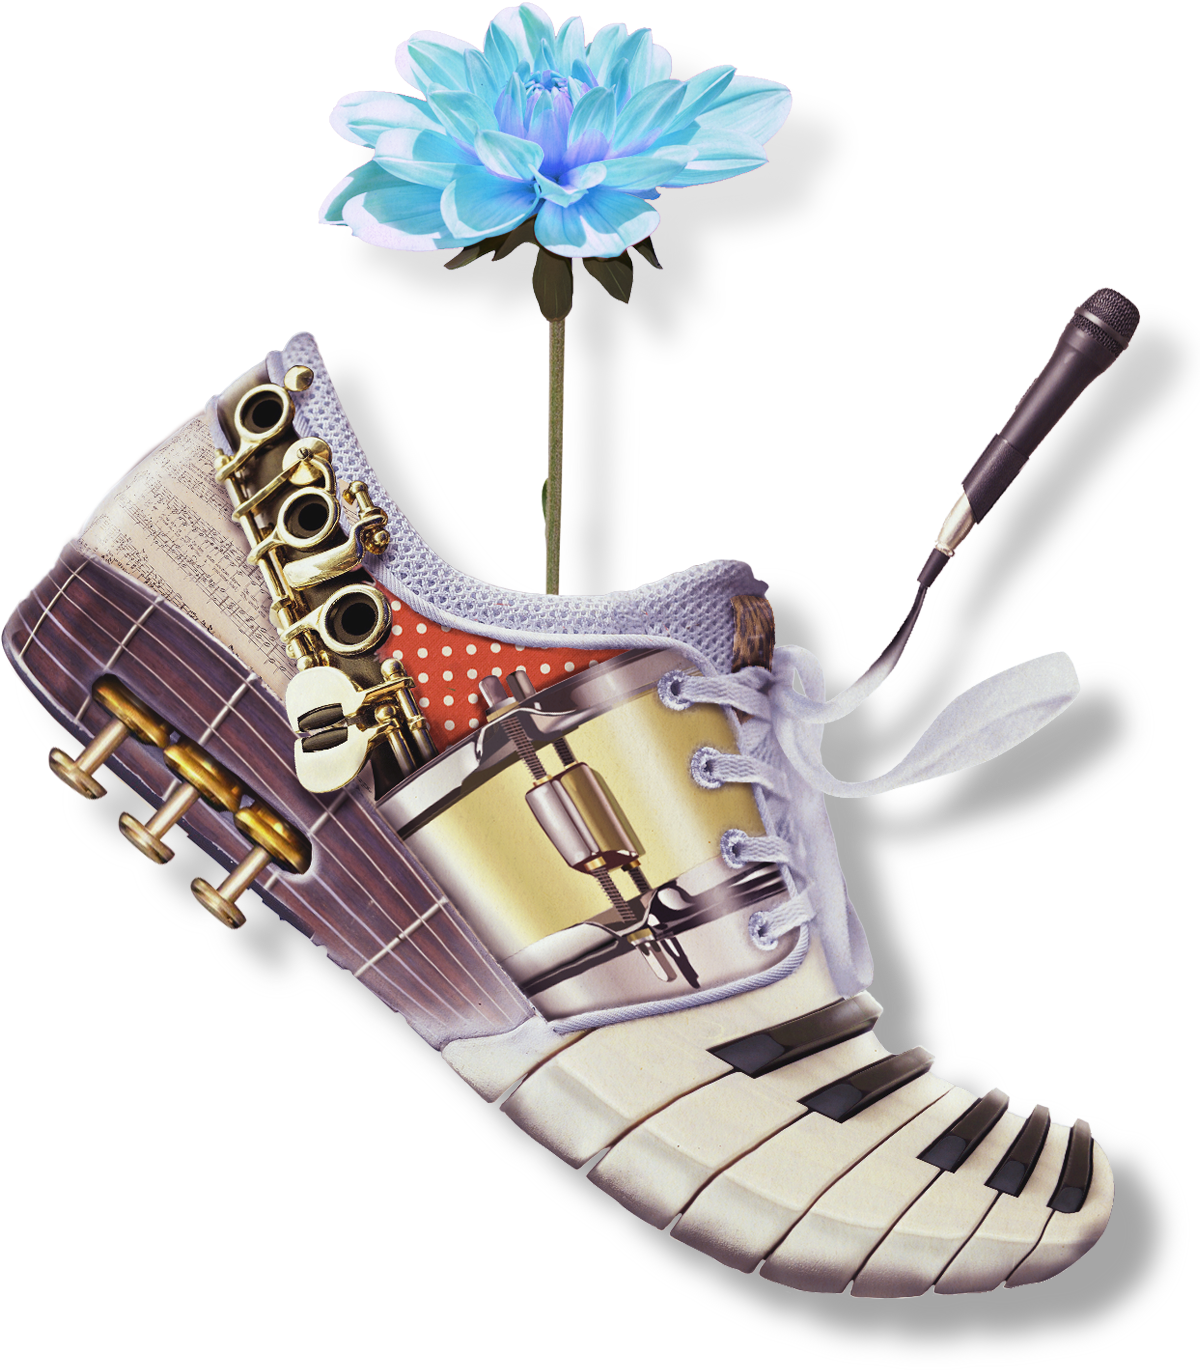 楽器の靴。駆け抜けるオーケストラをイメージしています。花は生み出される成果の象徴です